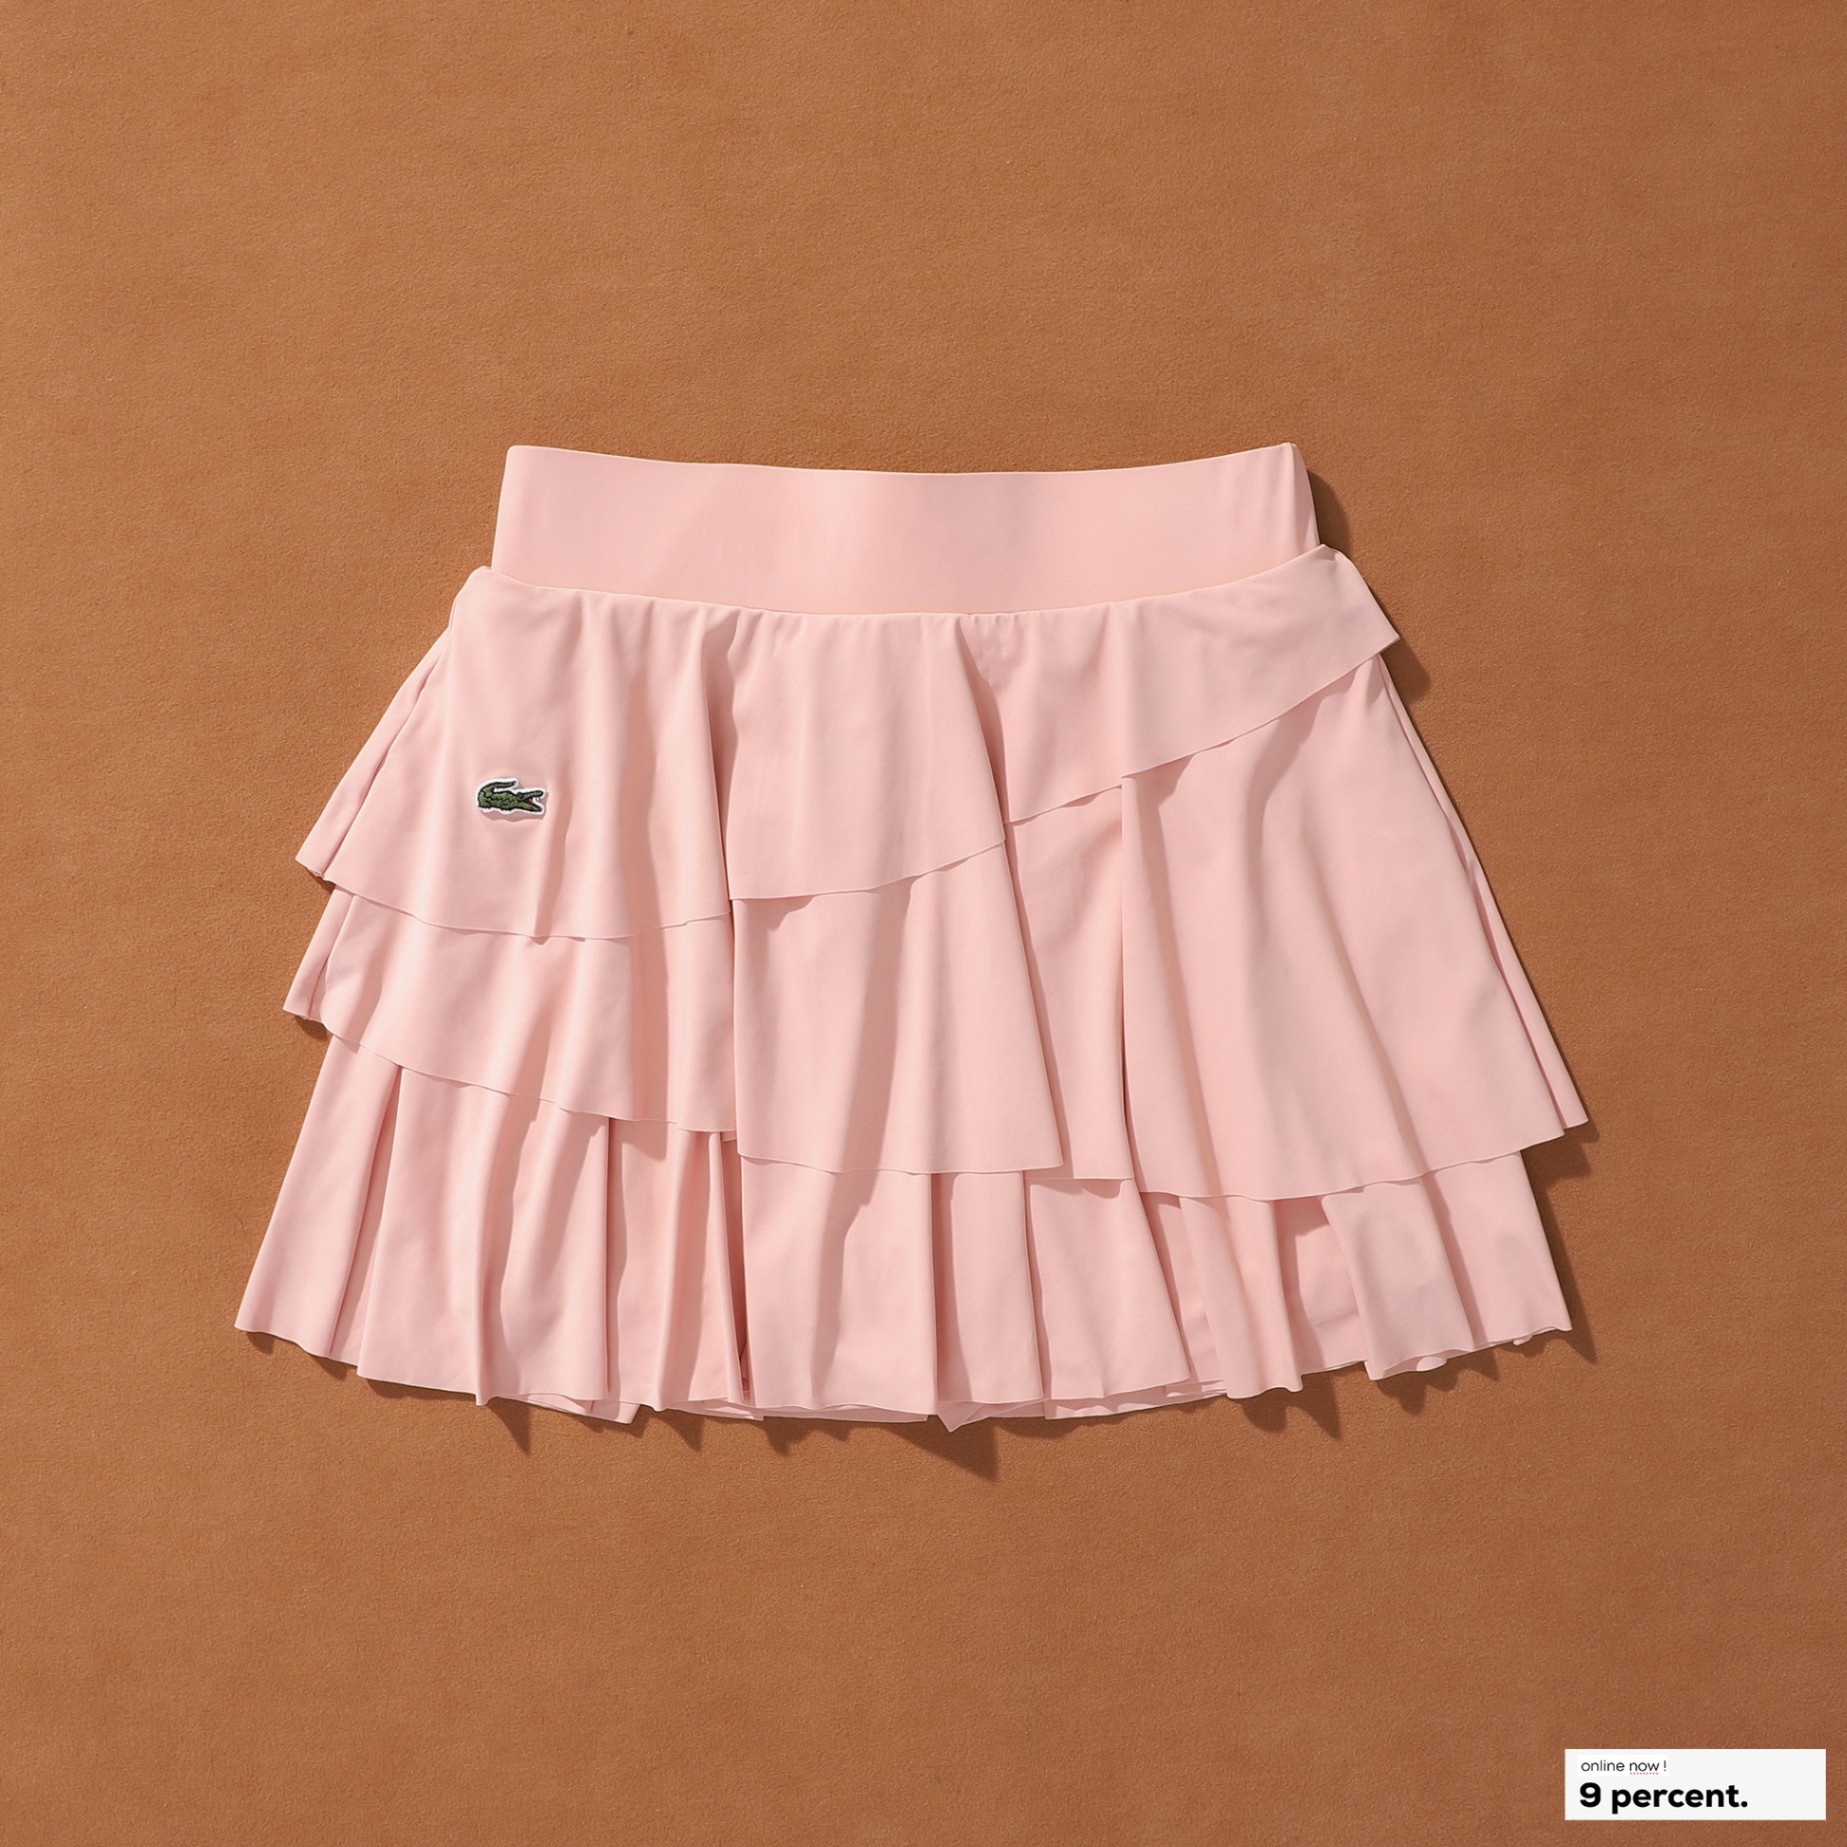 Thời trang công sở Citi Mode - Đầm ren trắng phối chân váy xòe đen Mã SP:  461 Giảm giá còn 399k | Facebook